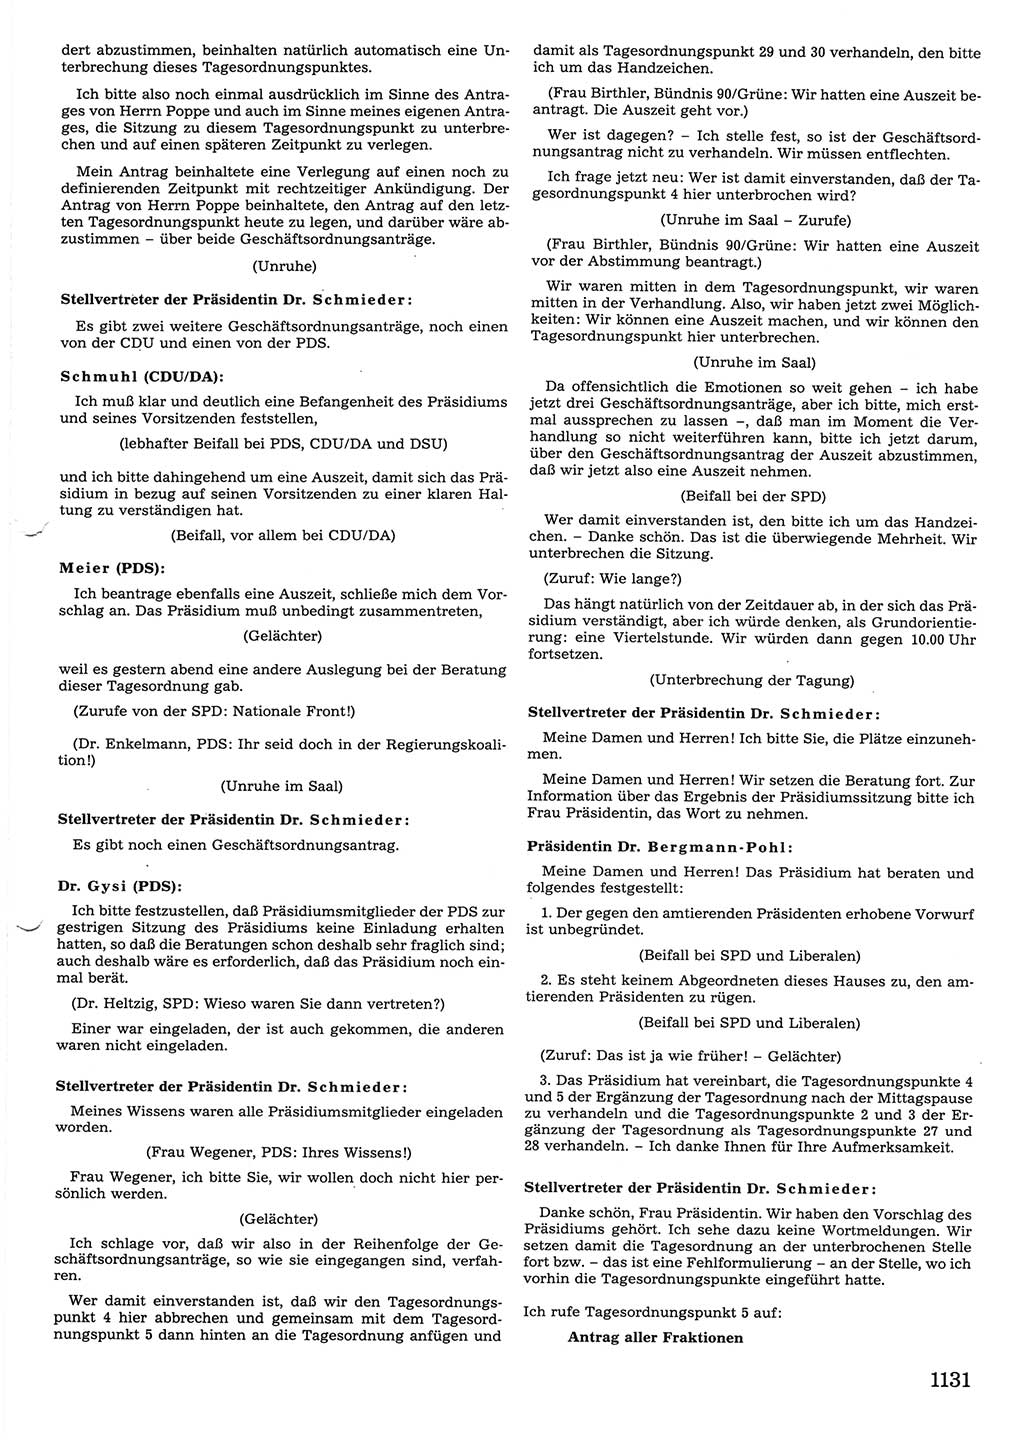 Tagungen der Volkskammer (VK) der Deutschen Demokratischen Republik (DDR), 10. Wahlperiode 1990, Seite 1131 (VK. DDR 10. WP. 1990, Prot. Tg. 1-38, 5.4.-2.10.1990, S. 1131)